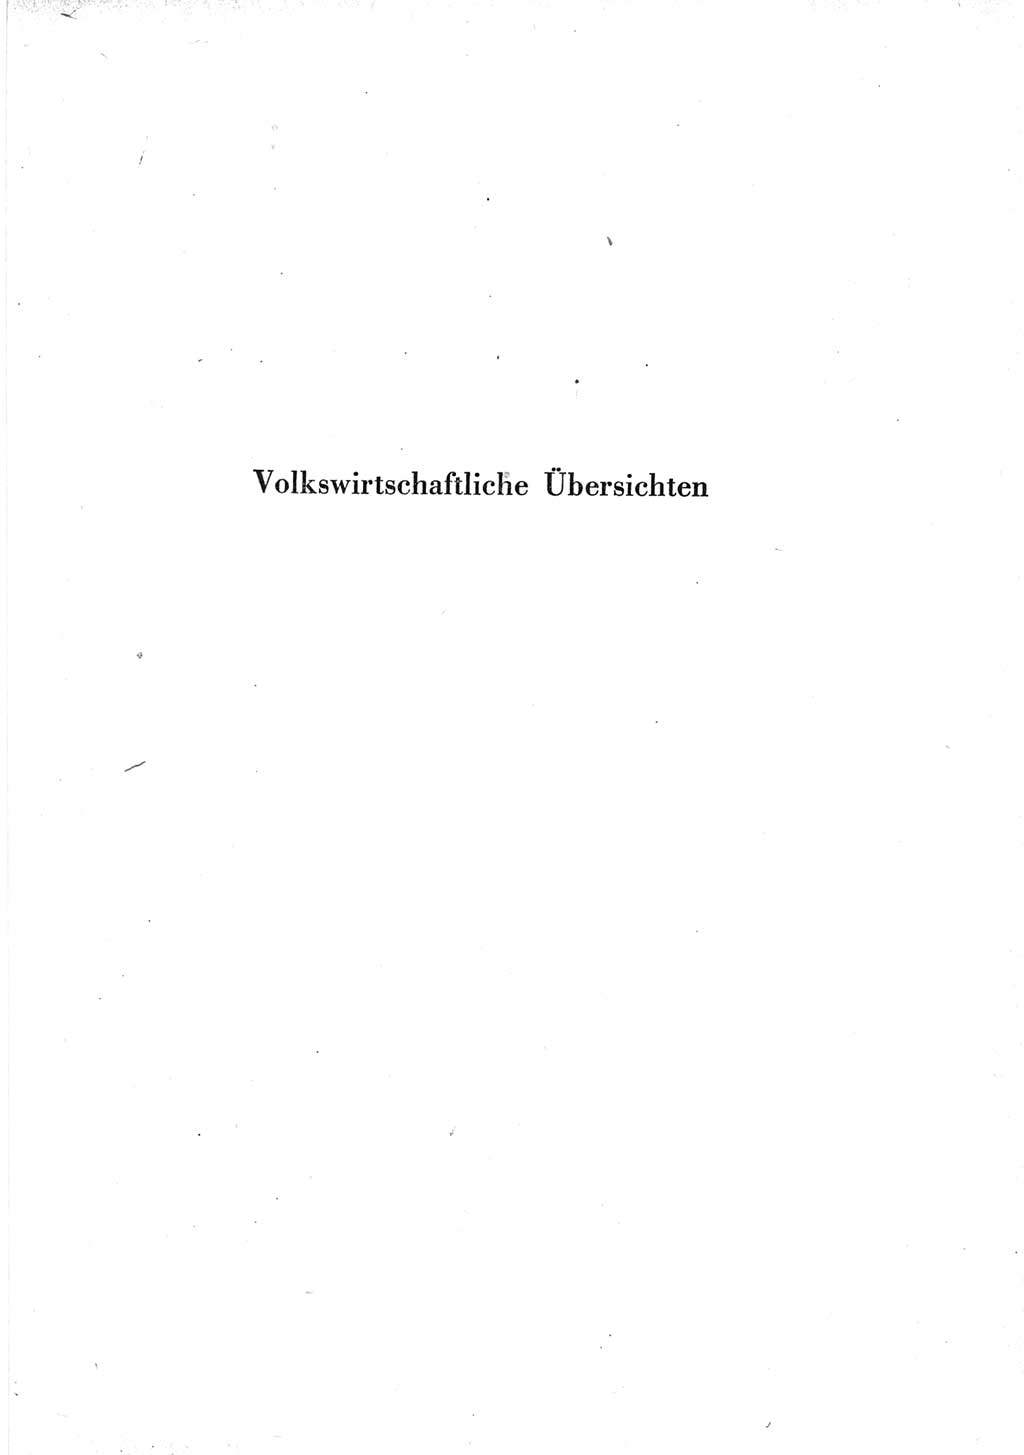 Statistisches Jahrbuch der Deutschen Demokratischen Republik (DDR) 1965, Seite 15 (Stat. Jb. DDR 1965, S. 15)